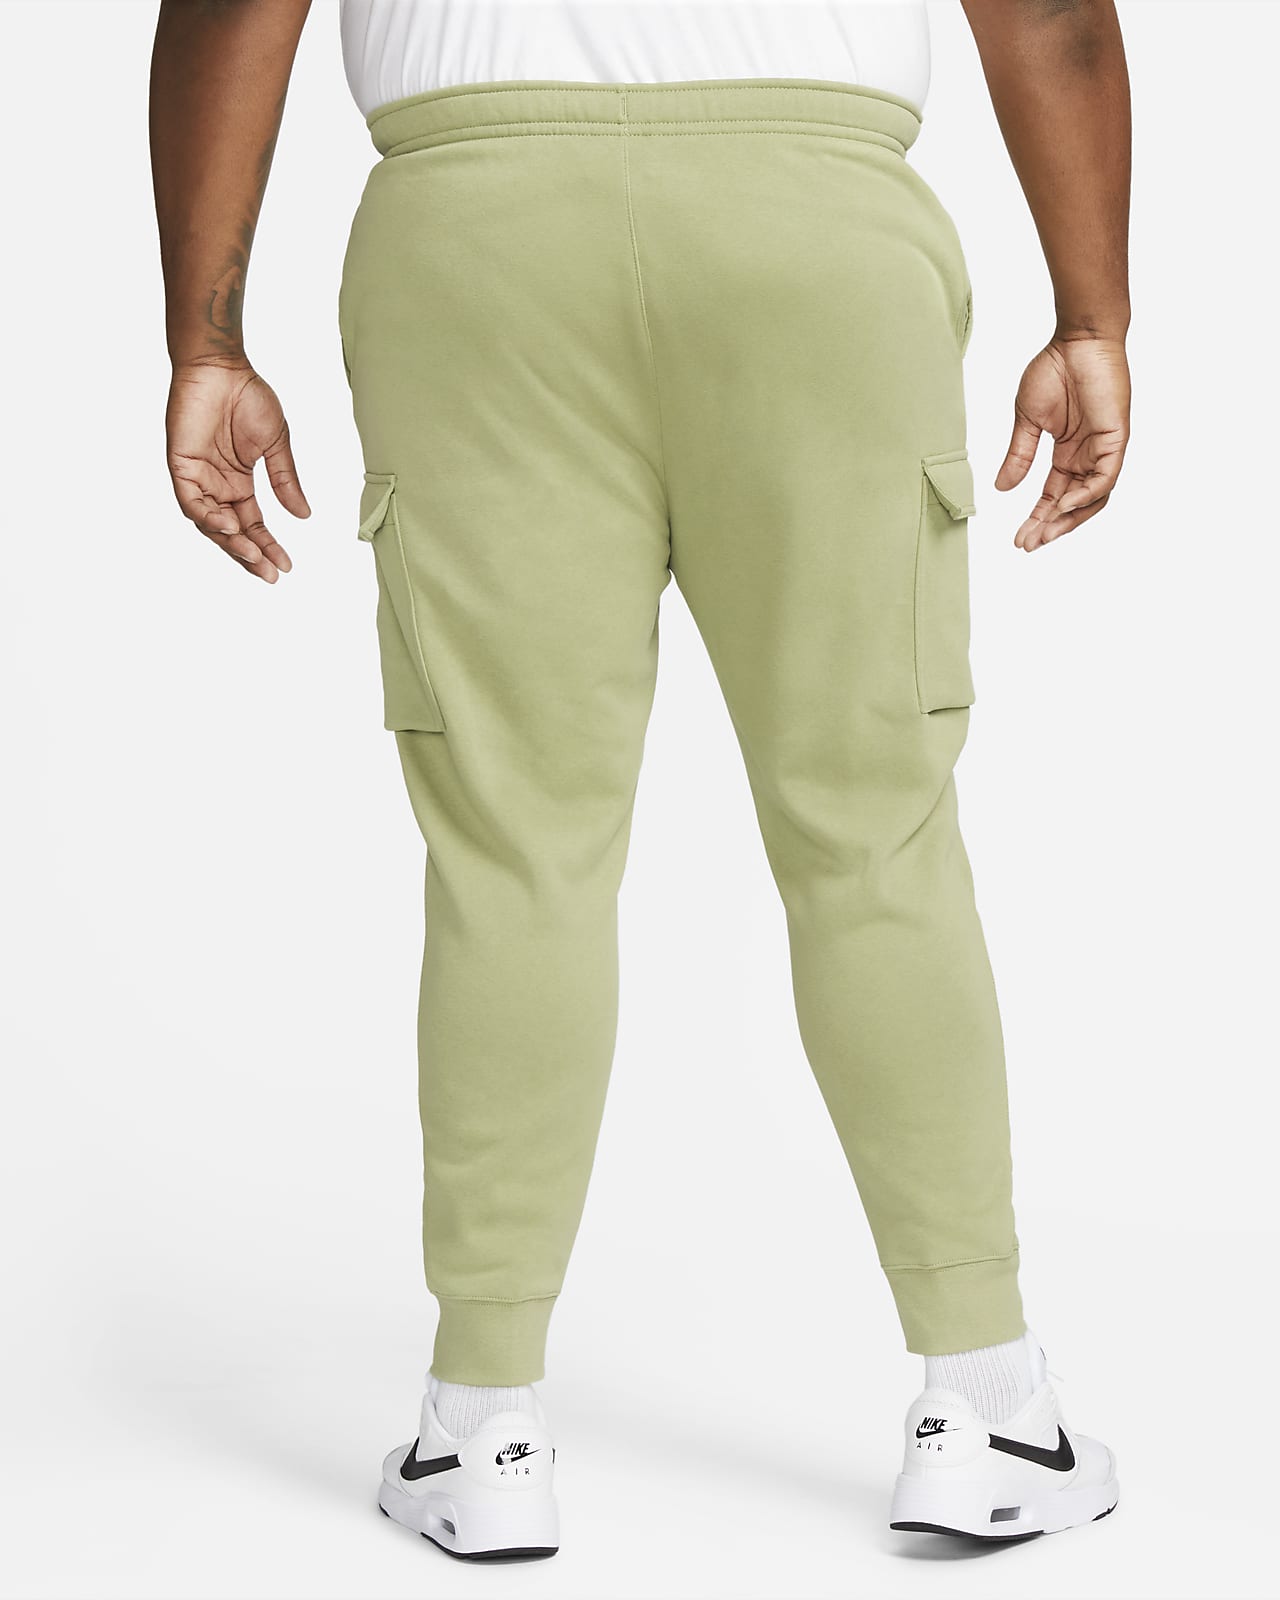 plato Hay una necesidad de Falsedad Nike Sportswear Club Fleece Men's Cargo Pants. Nike.com